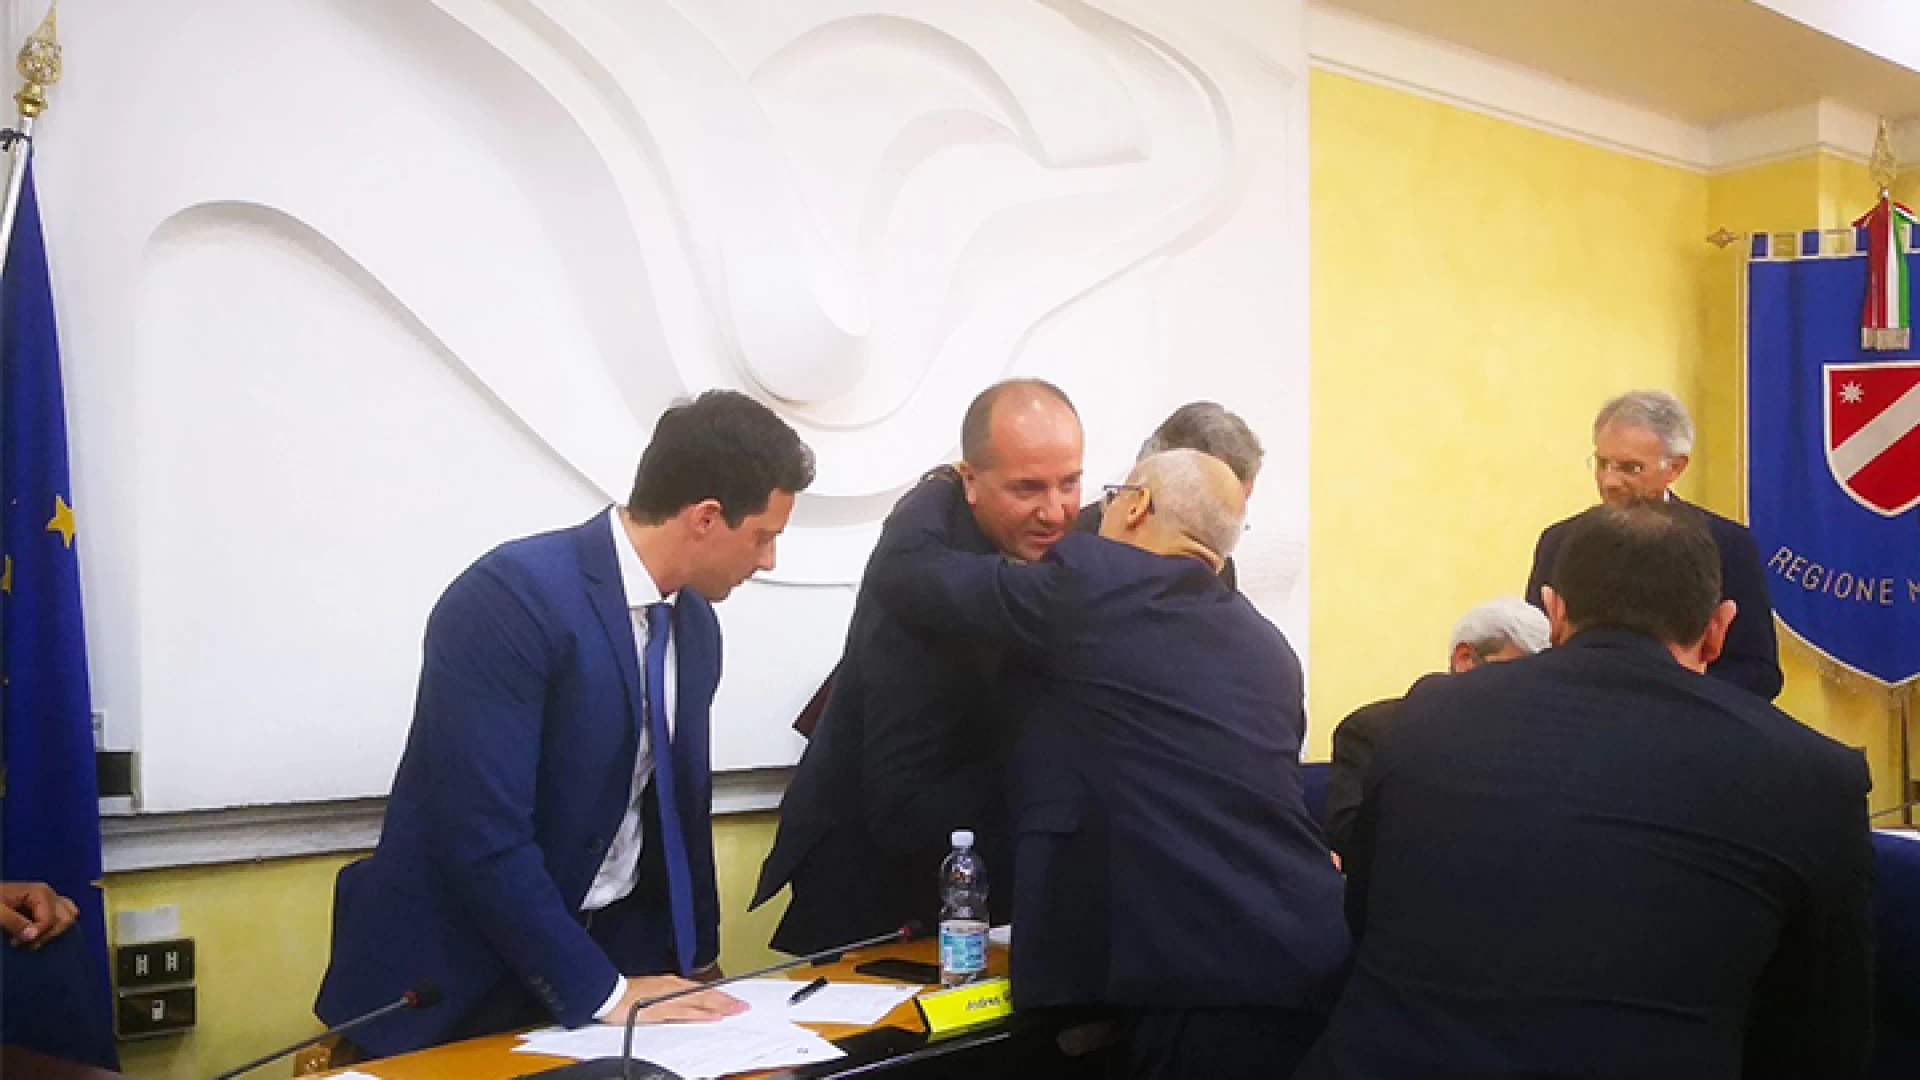 Salvatore Micone eletto alla Presidenza del Consiglio regionale. Per lui 14 voti ed i complimenti nazionali da parte di Lorenzo Cesa.